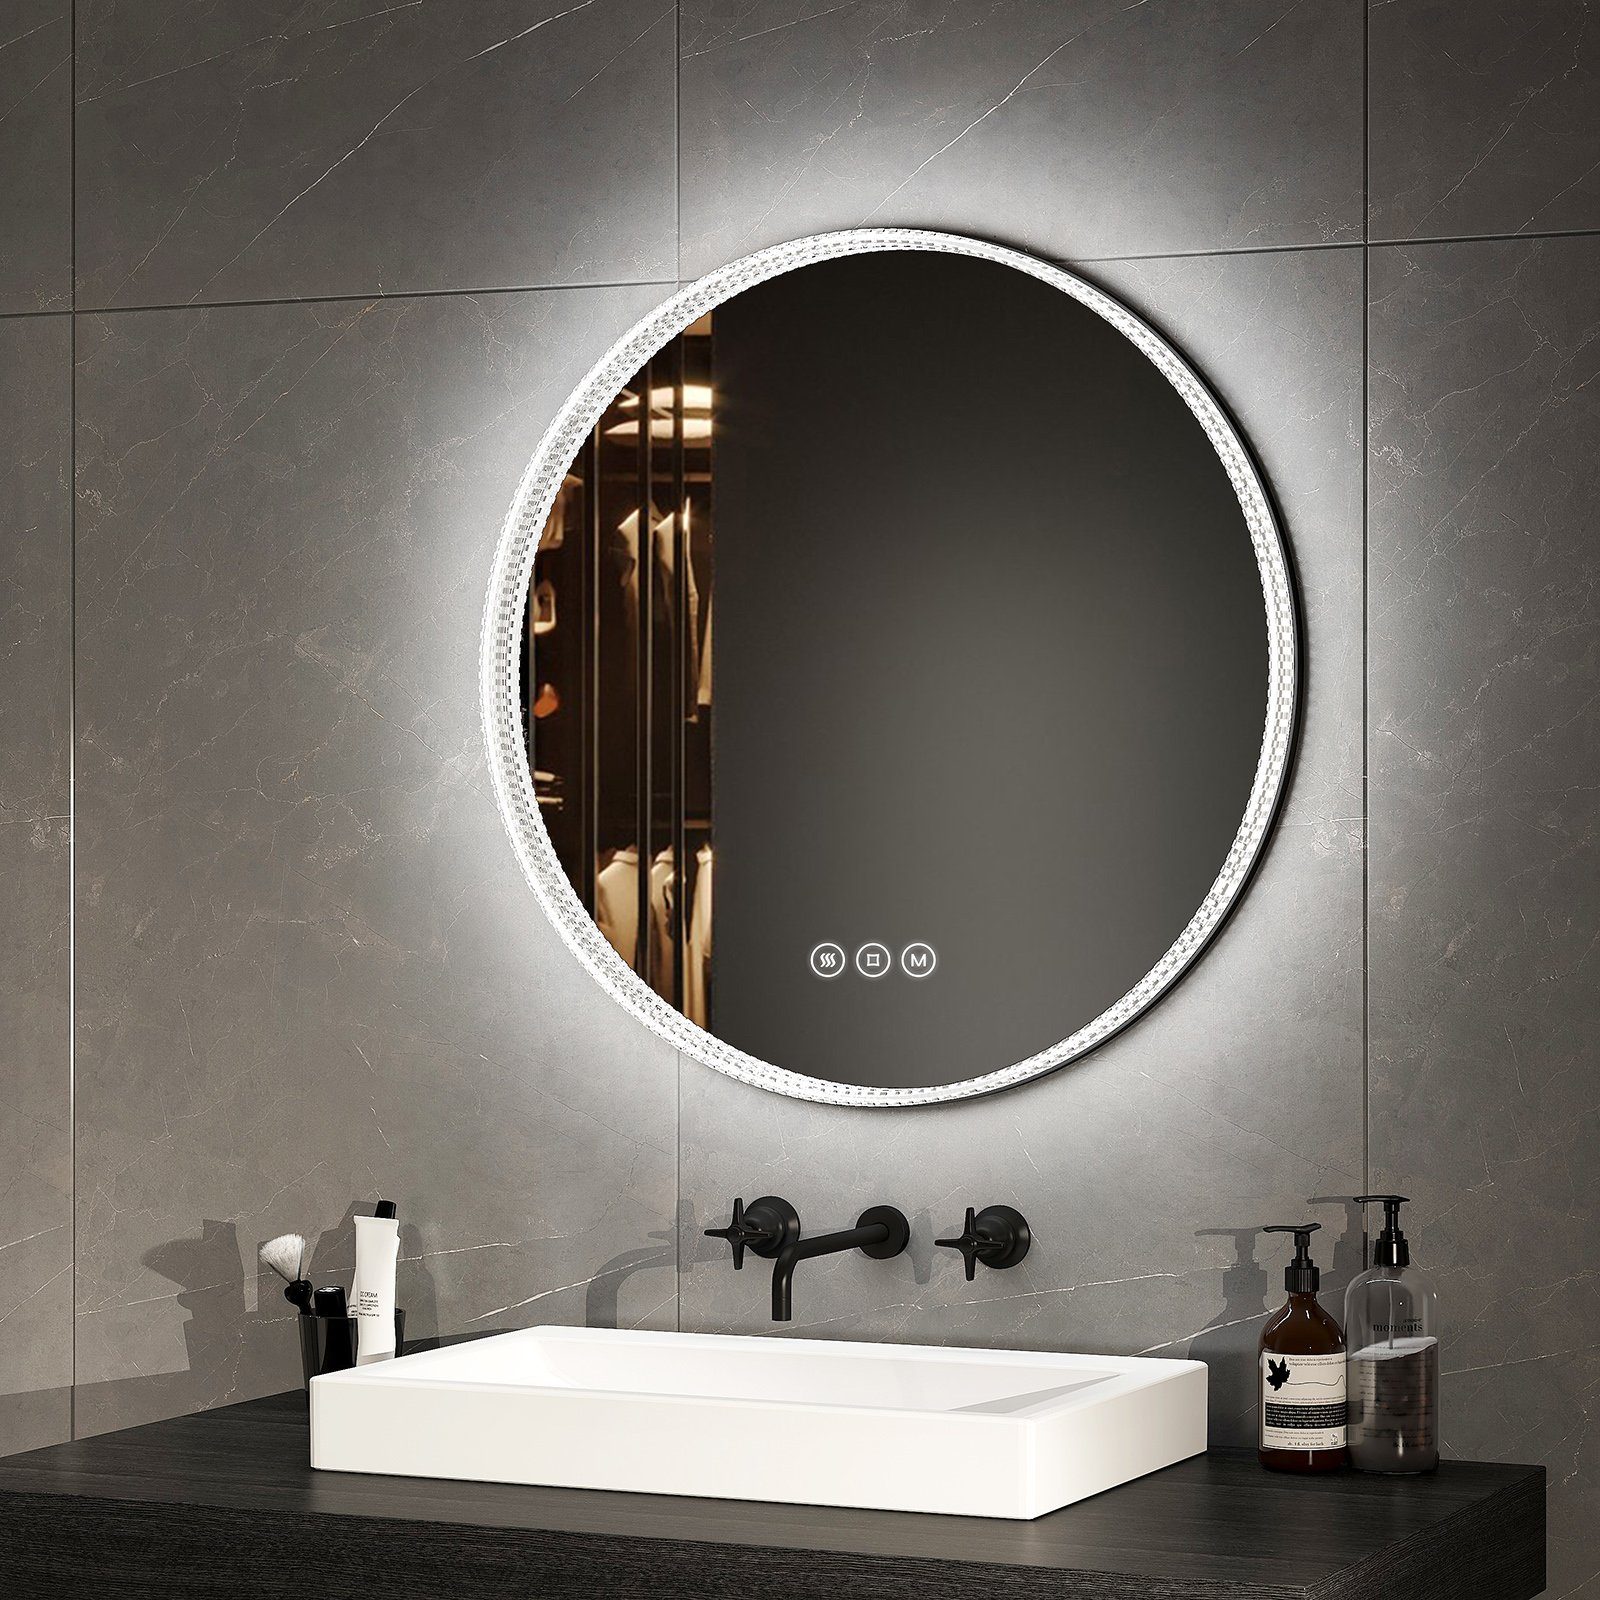 EMKE Badspiegel 60 cm LED Badezimmerspiegel 3 Lichtfarben Acryl Rahmen Spiegel, Wandspiegel mit Touch, Antibeschlage,Dimmbar, Memory-Funktion Schwarzer Rand